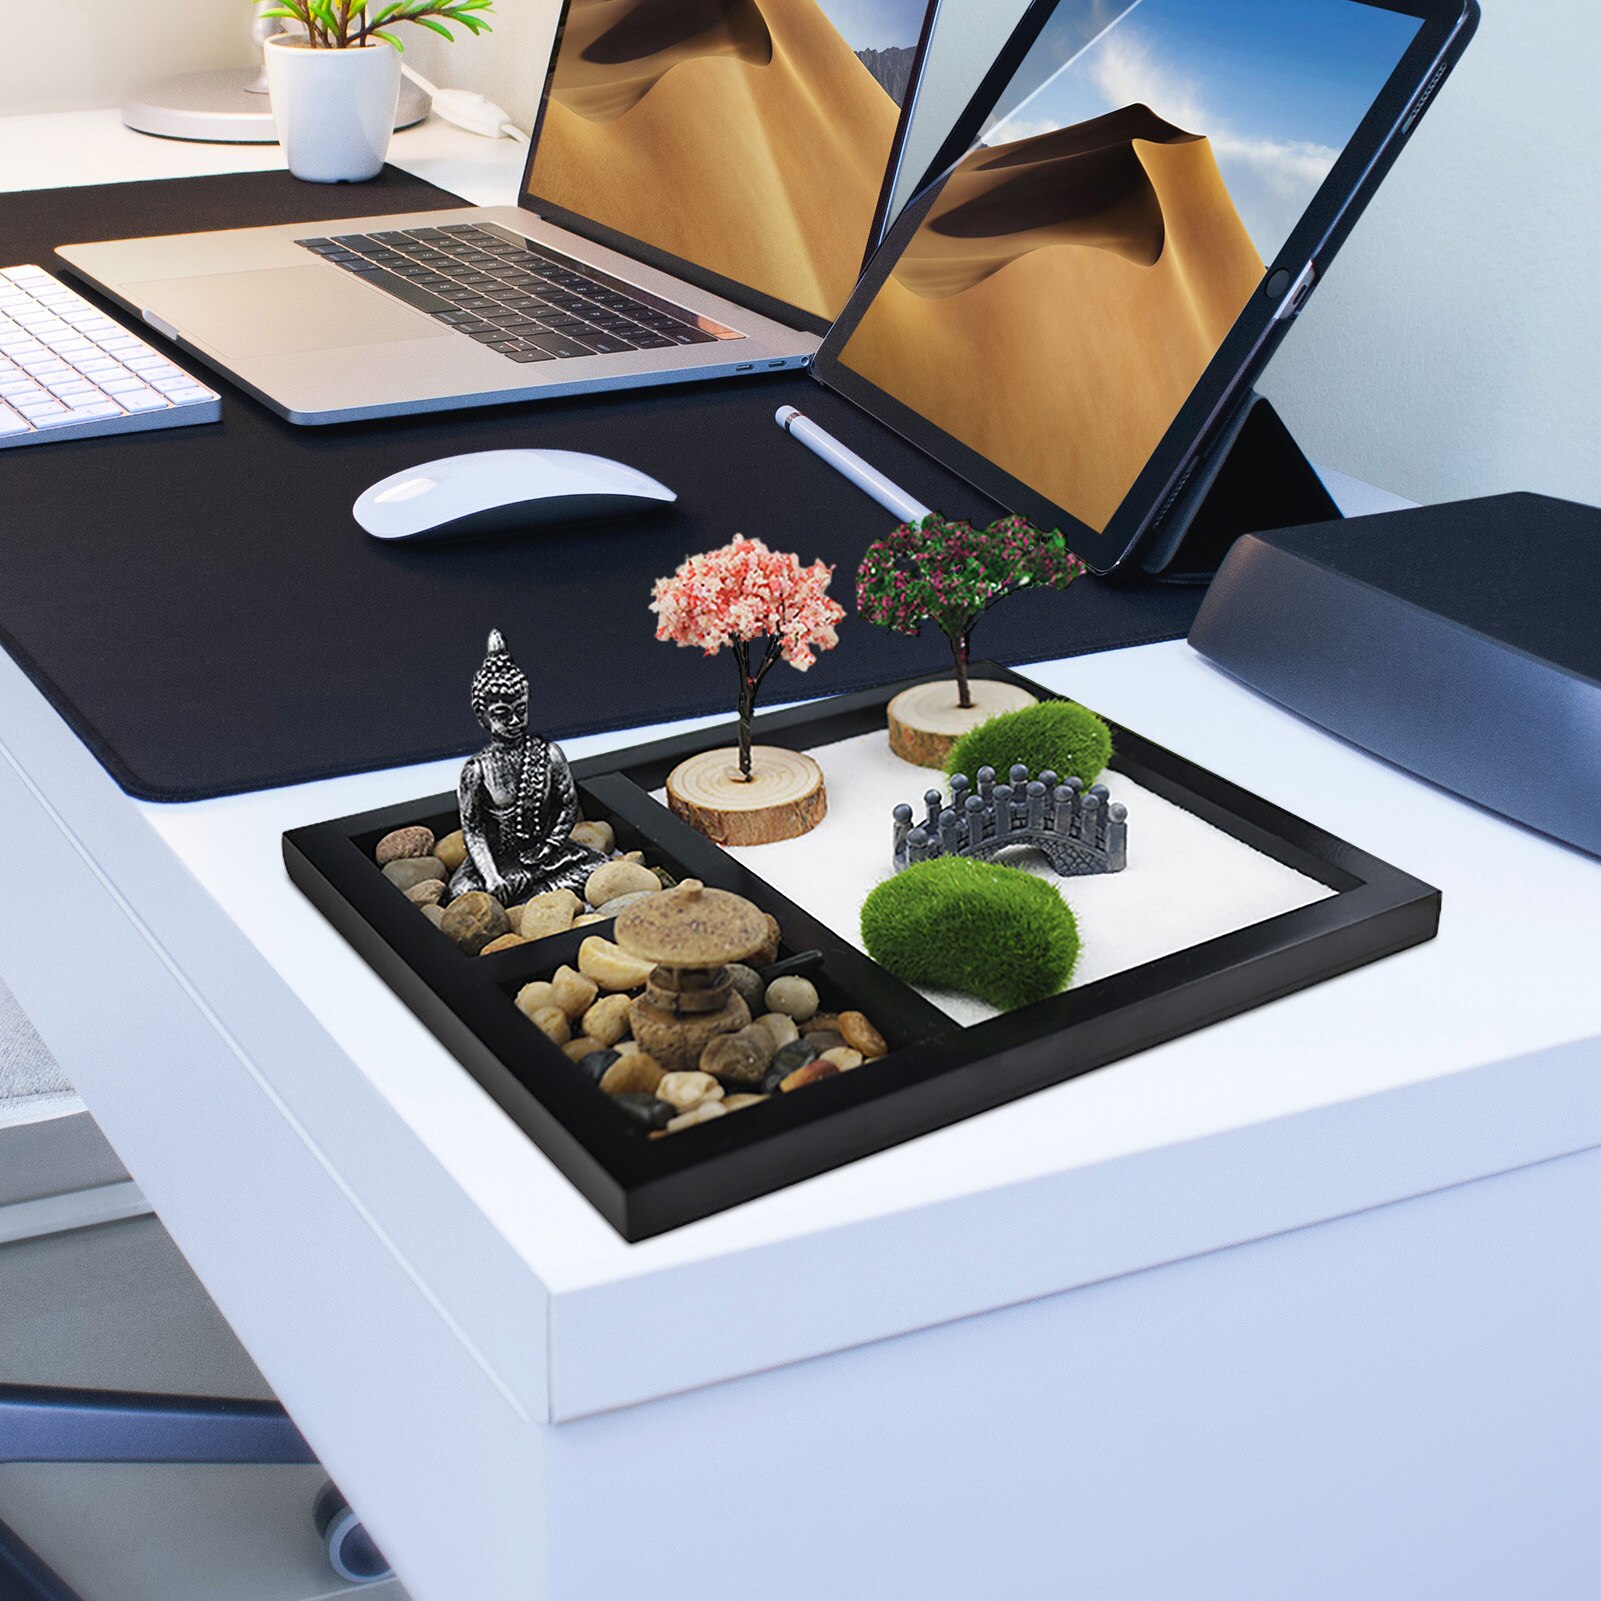 Japanese Zen Sand Garden Tabletop Mini Zen Garden Kit For Home Office Tabletop Decor For Concentration Relaxation Meditation 3